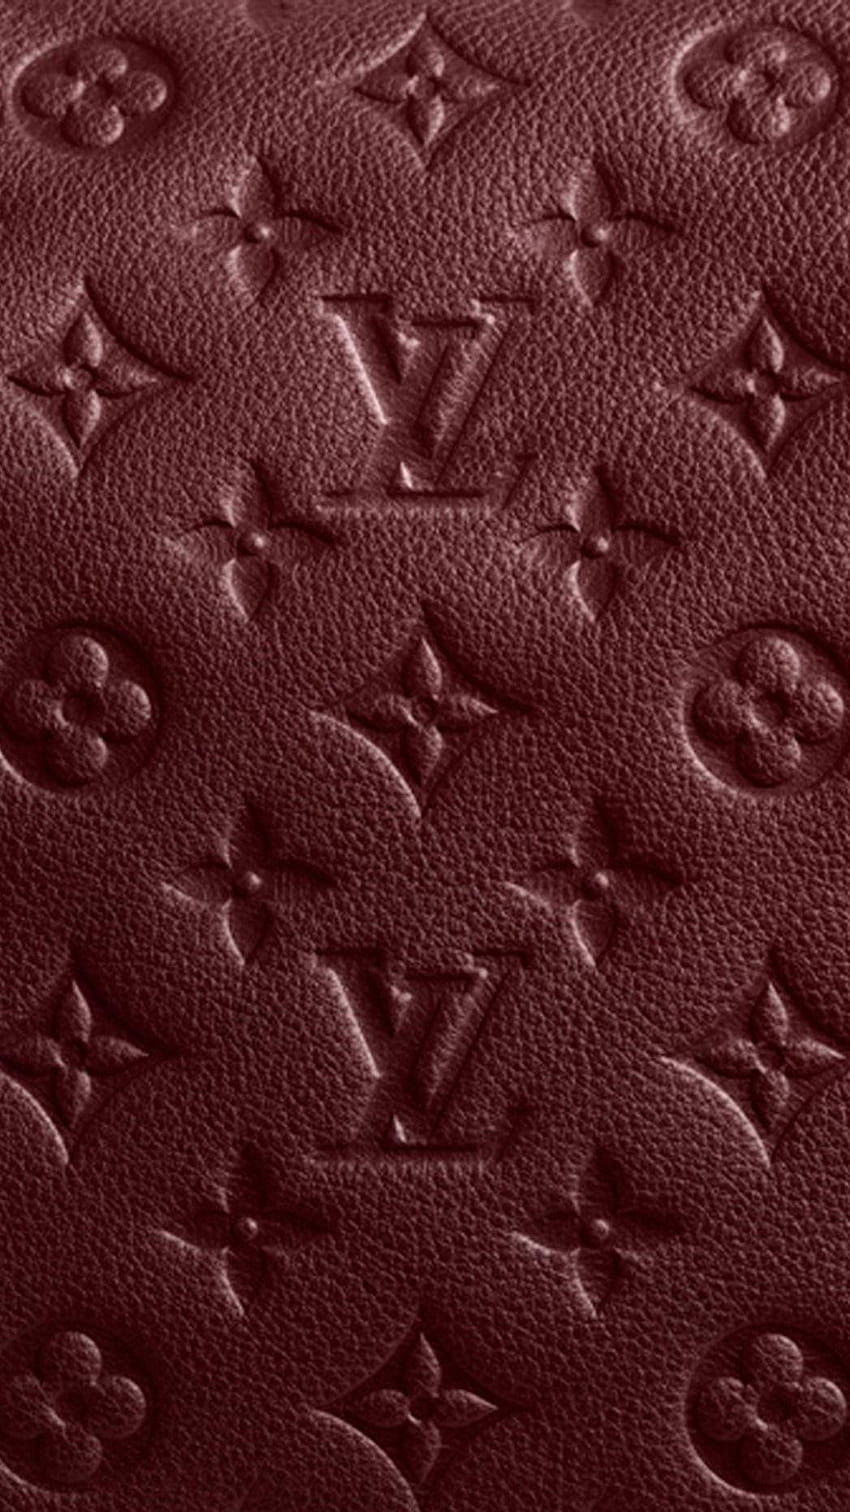 Classic Red Louis Vuitton Monogram x Supreme Logo iPhone 6S/6 Plus